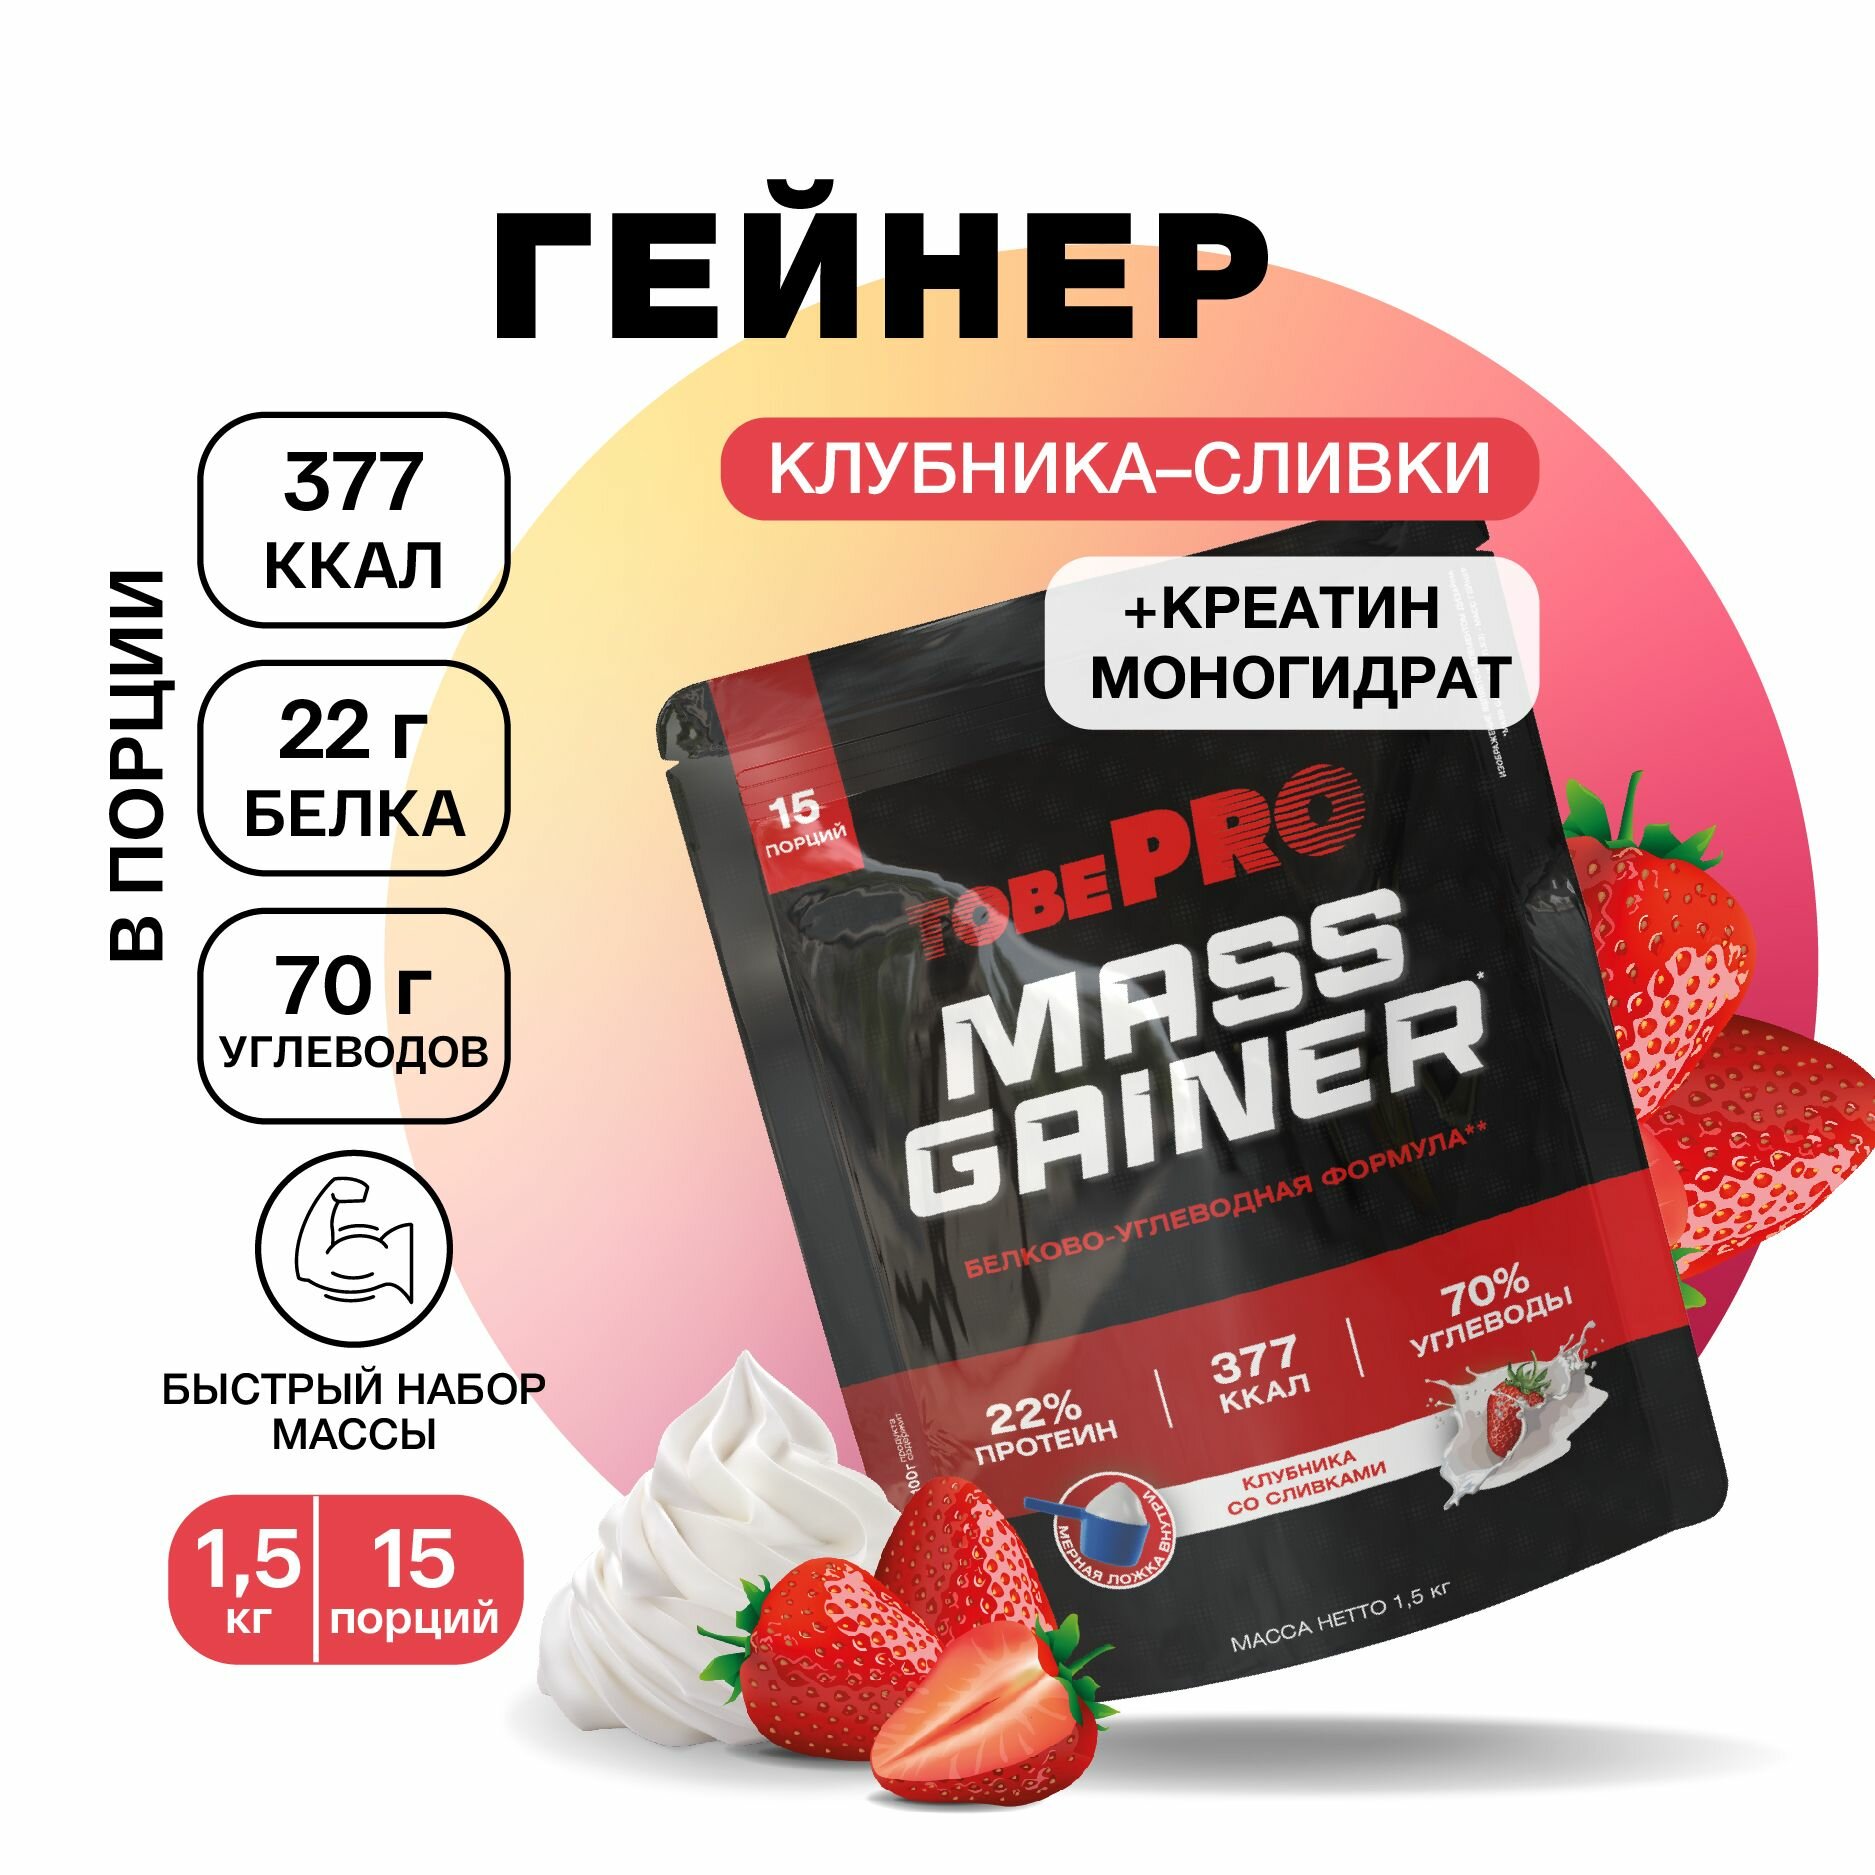 Гейнер протеин клубника со сливками MASS GAINER TobePRO для набора мышечной массы, Иван-поле, высокобелковый, 1,5 кг